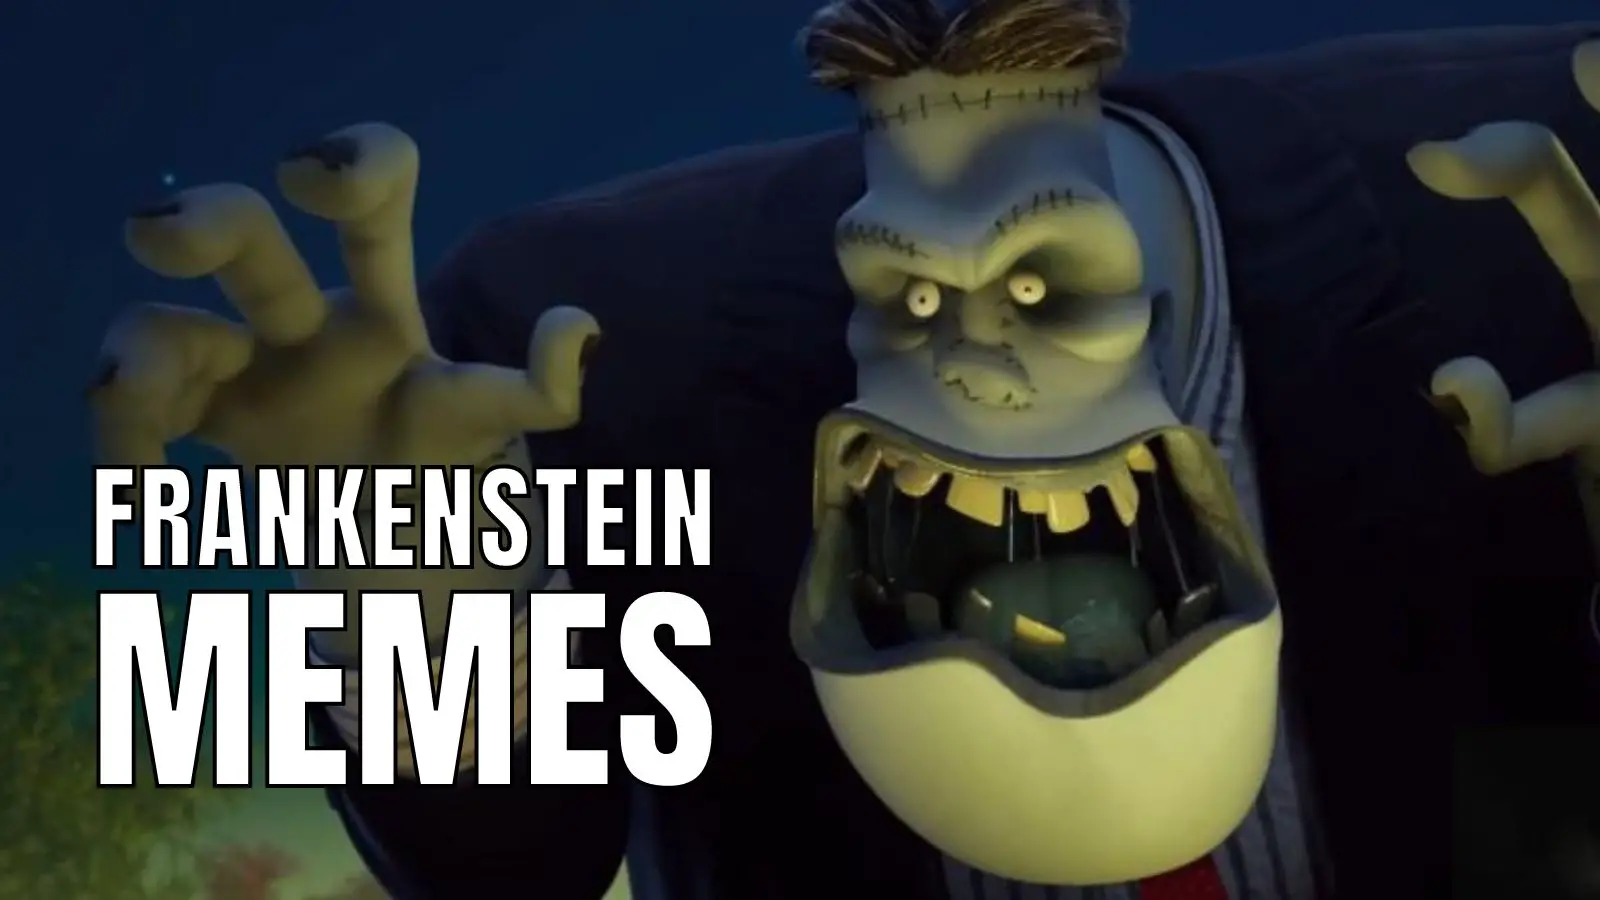 Funny Frankenstein Memes For Halloween